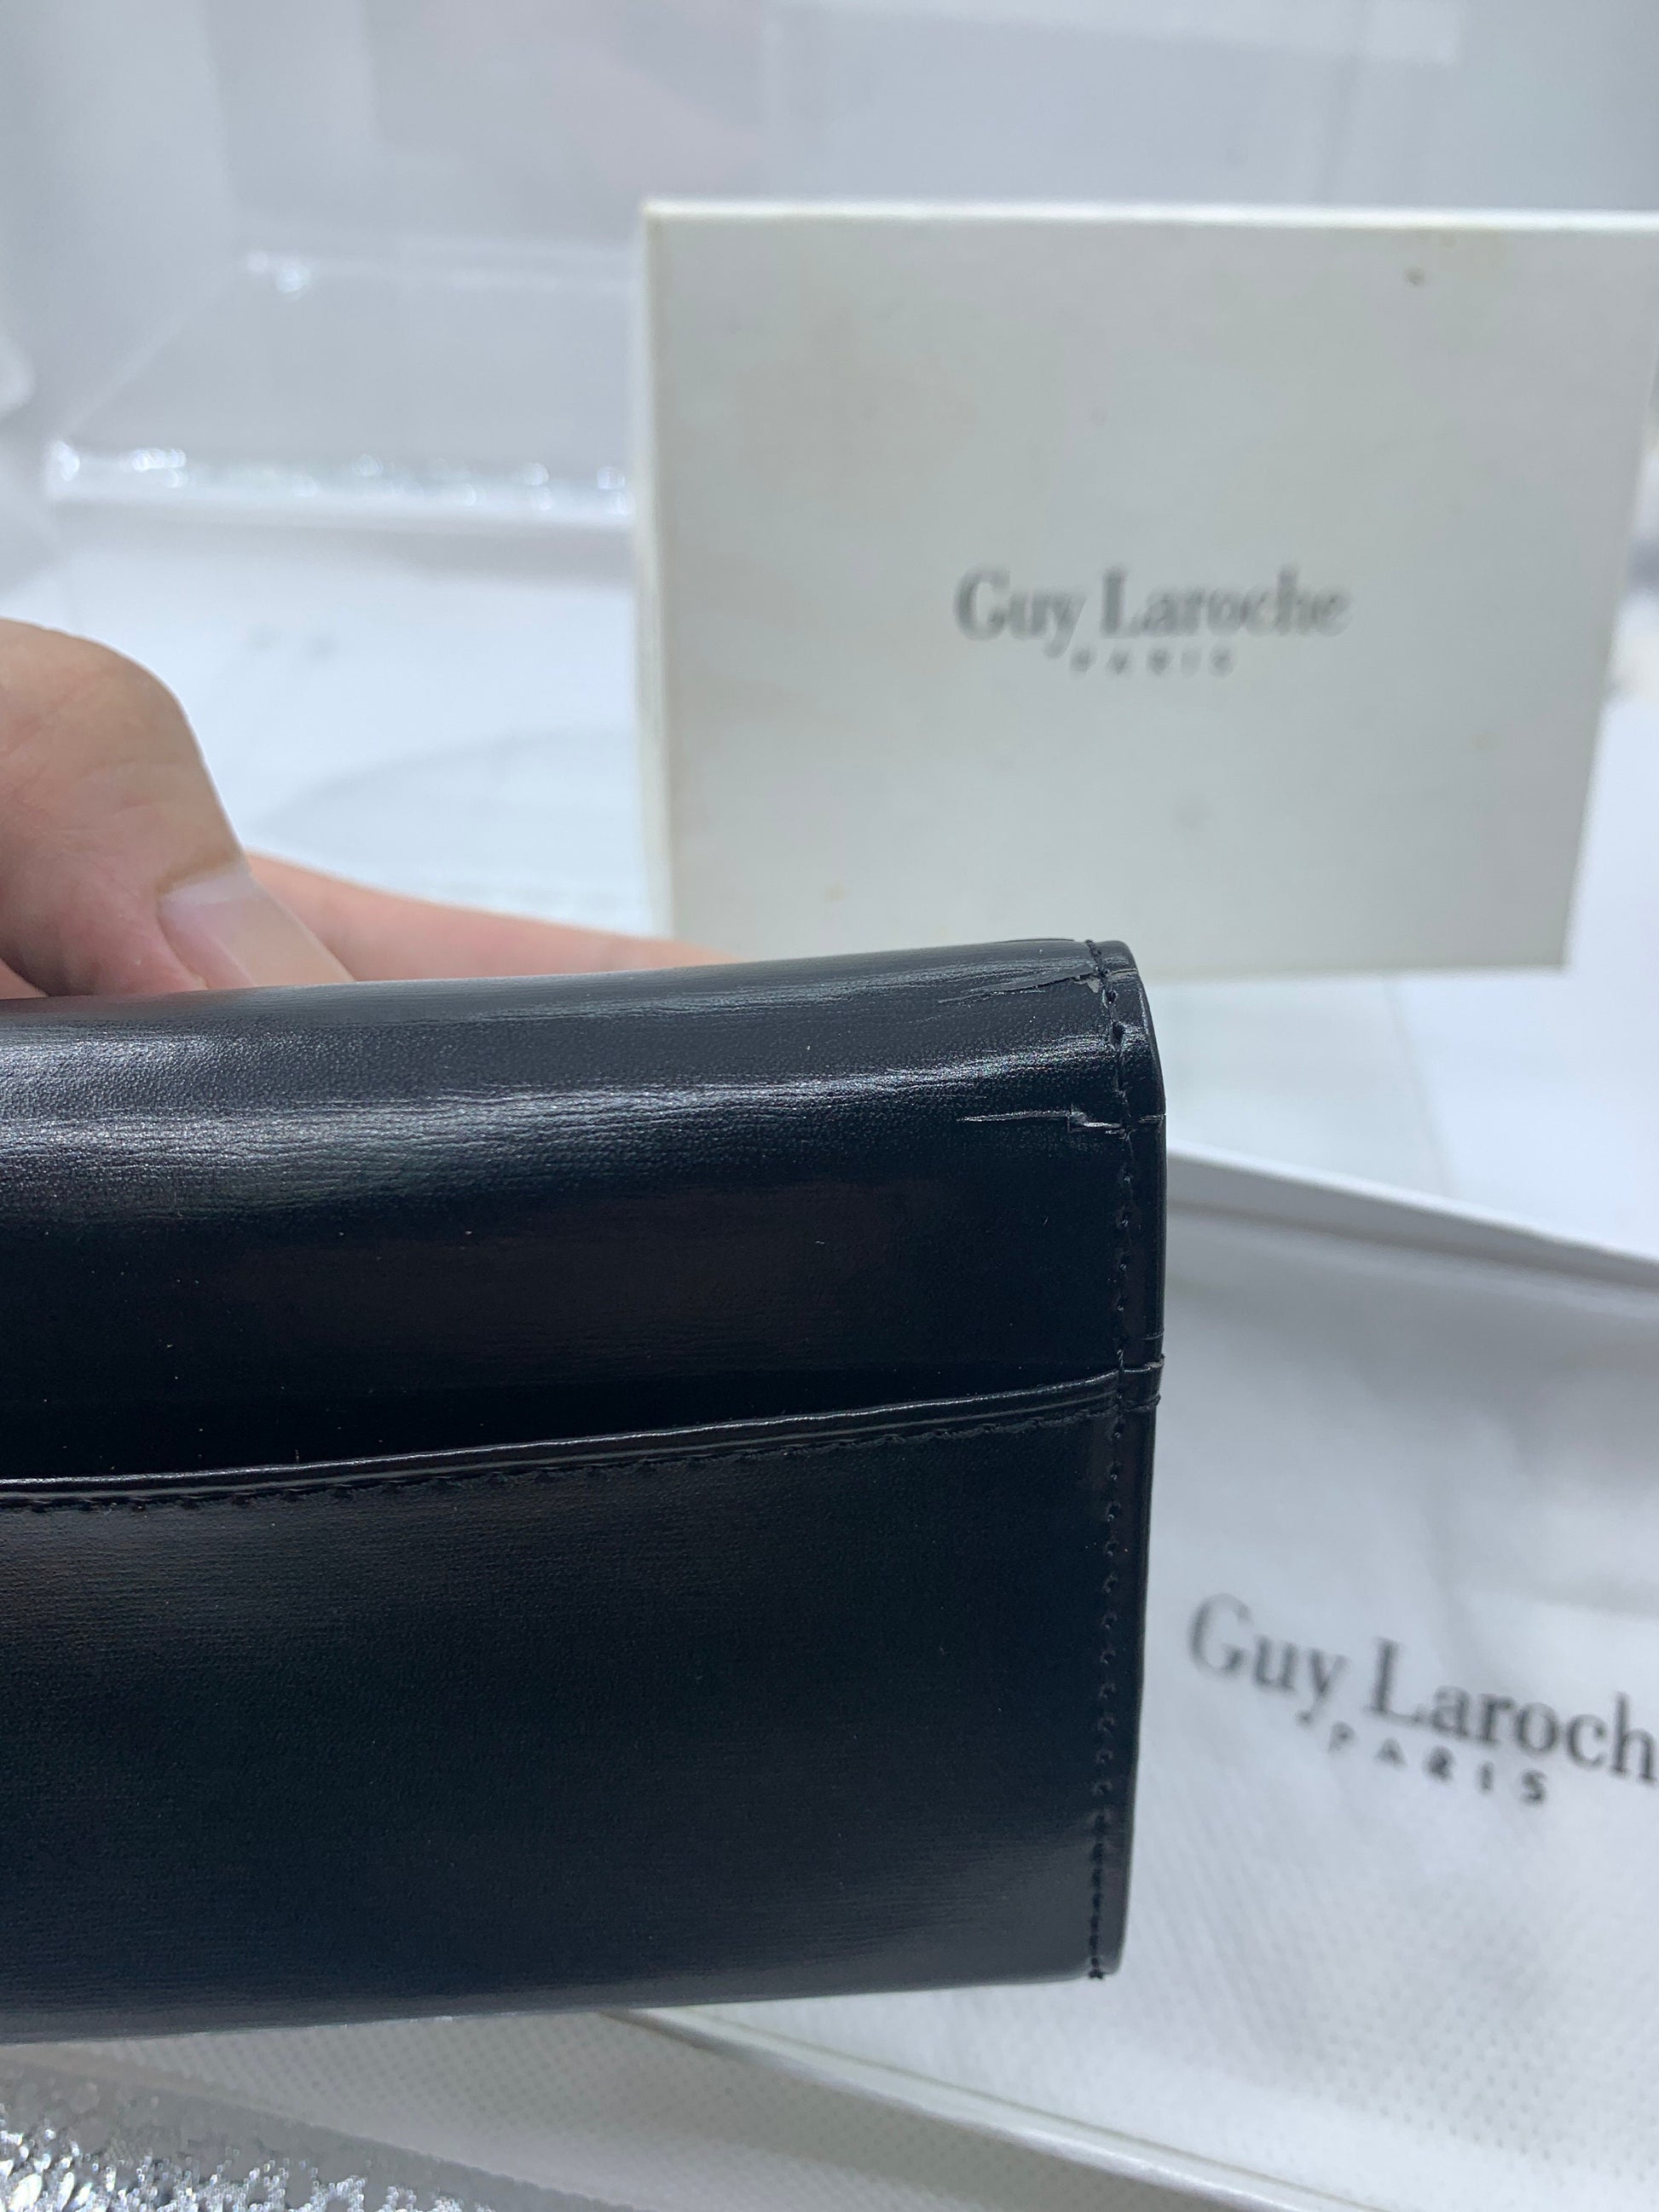 Guy Laroche Bags in Black